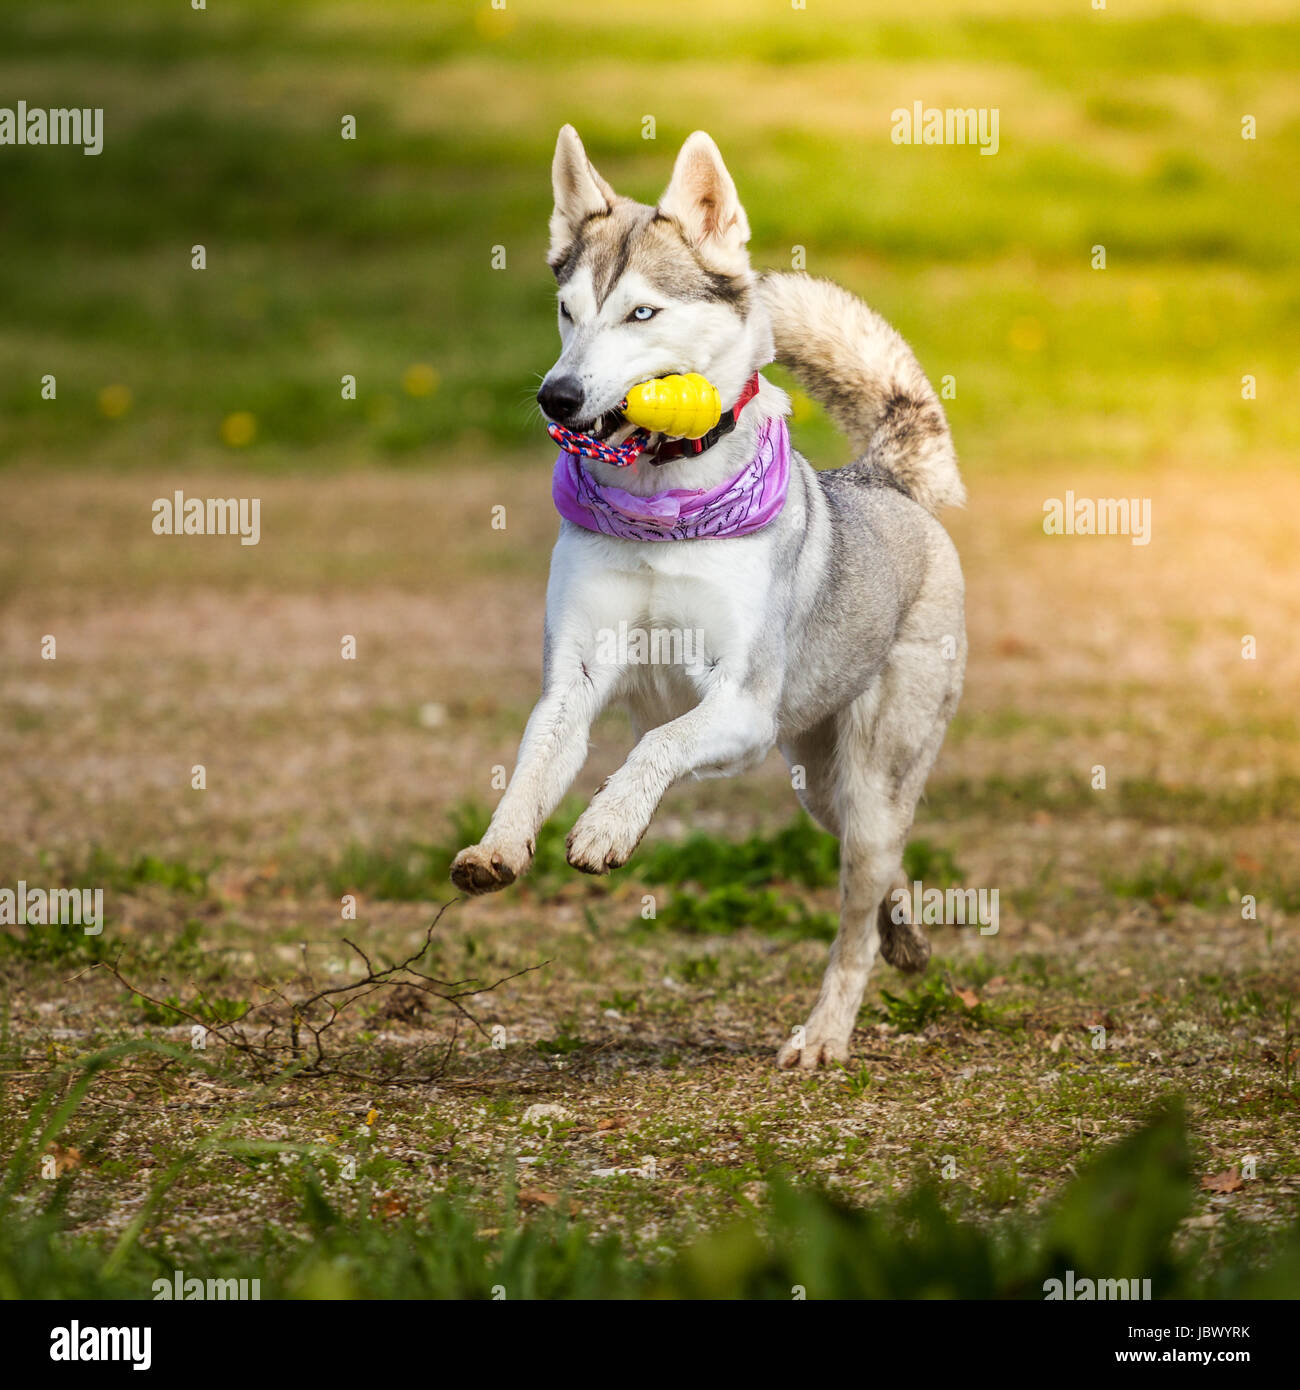 Eine Husky Hündin mit einer perfekten Figur rennt gut gelaunt mit ihrem Halstuch und ihrem Spielzeug durchs Bild. Stock Photo